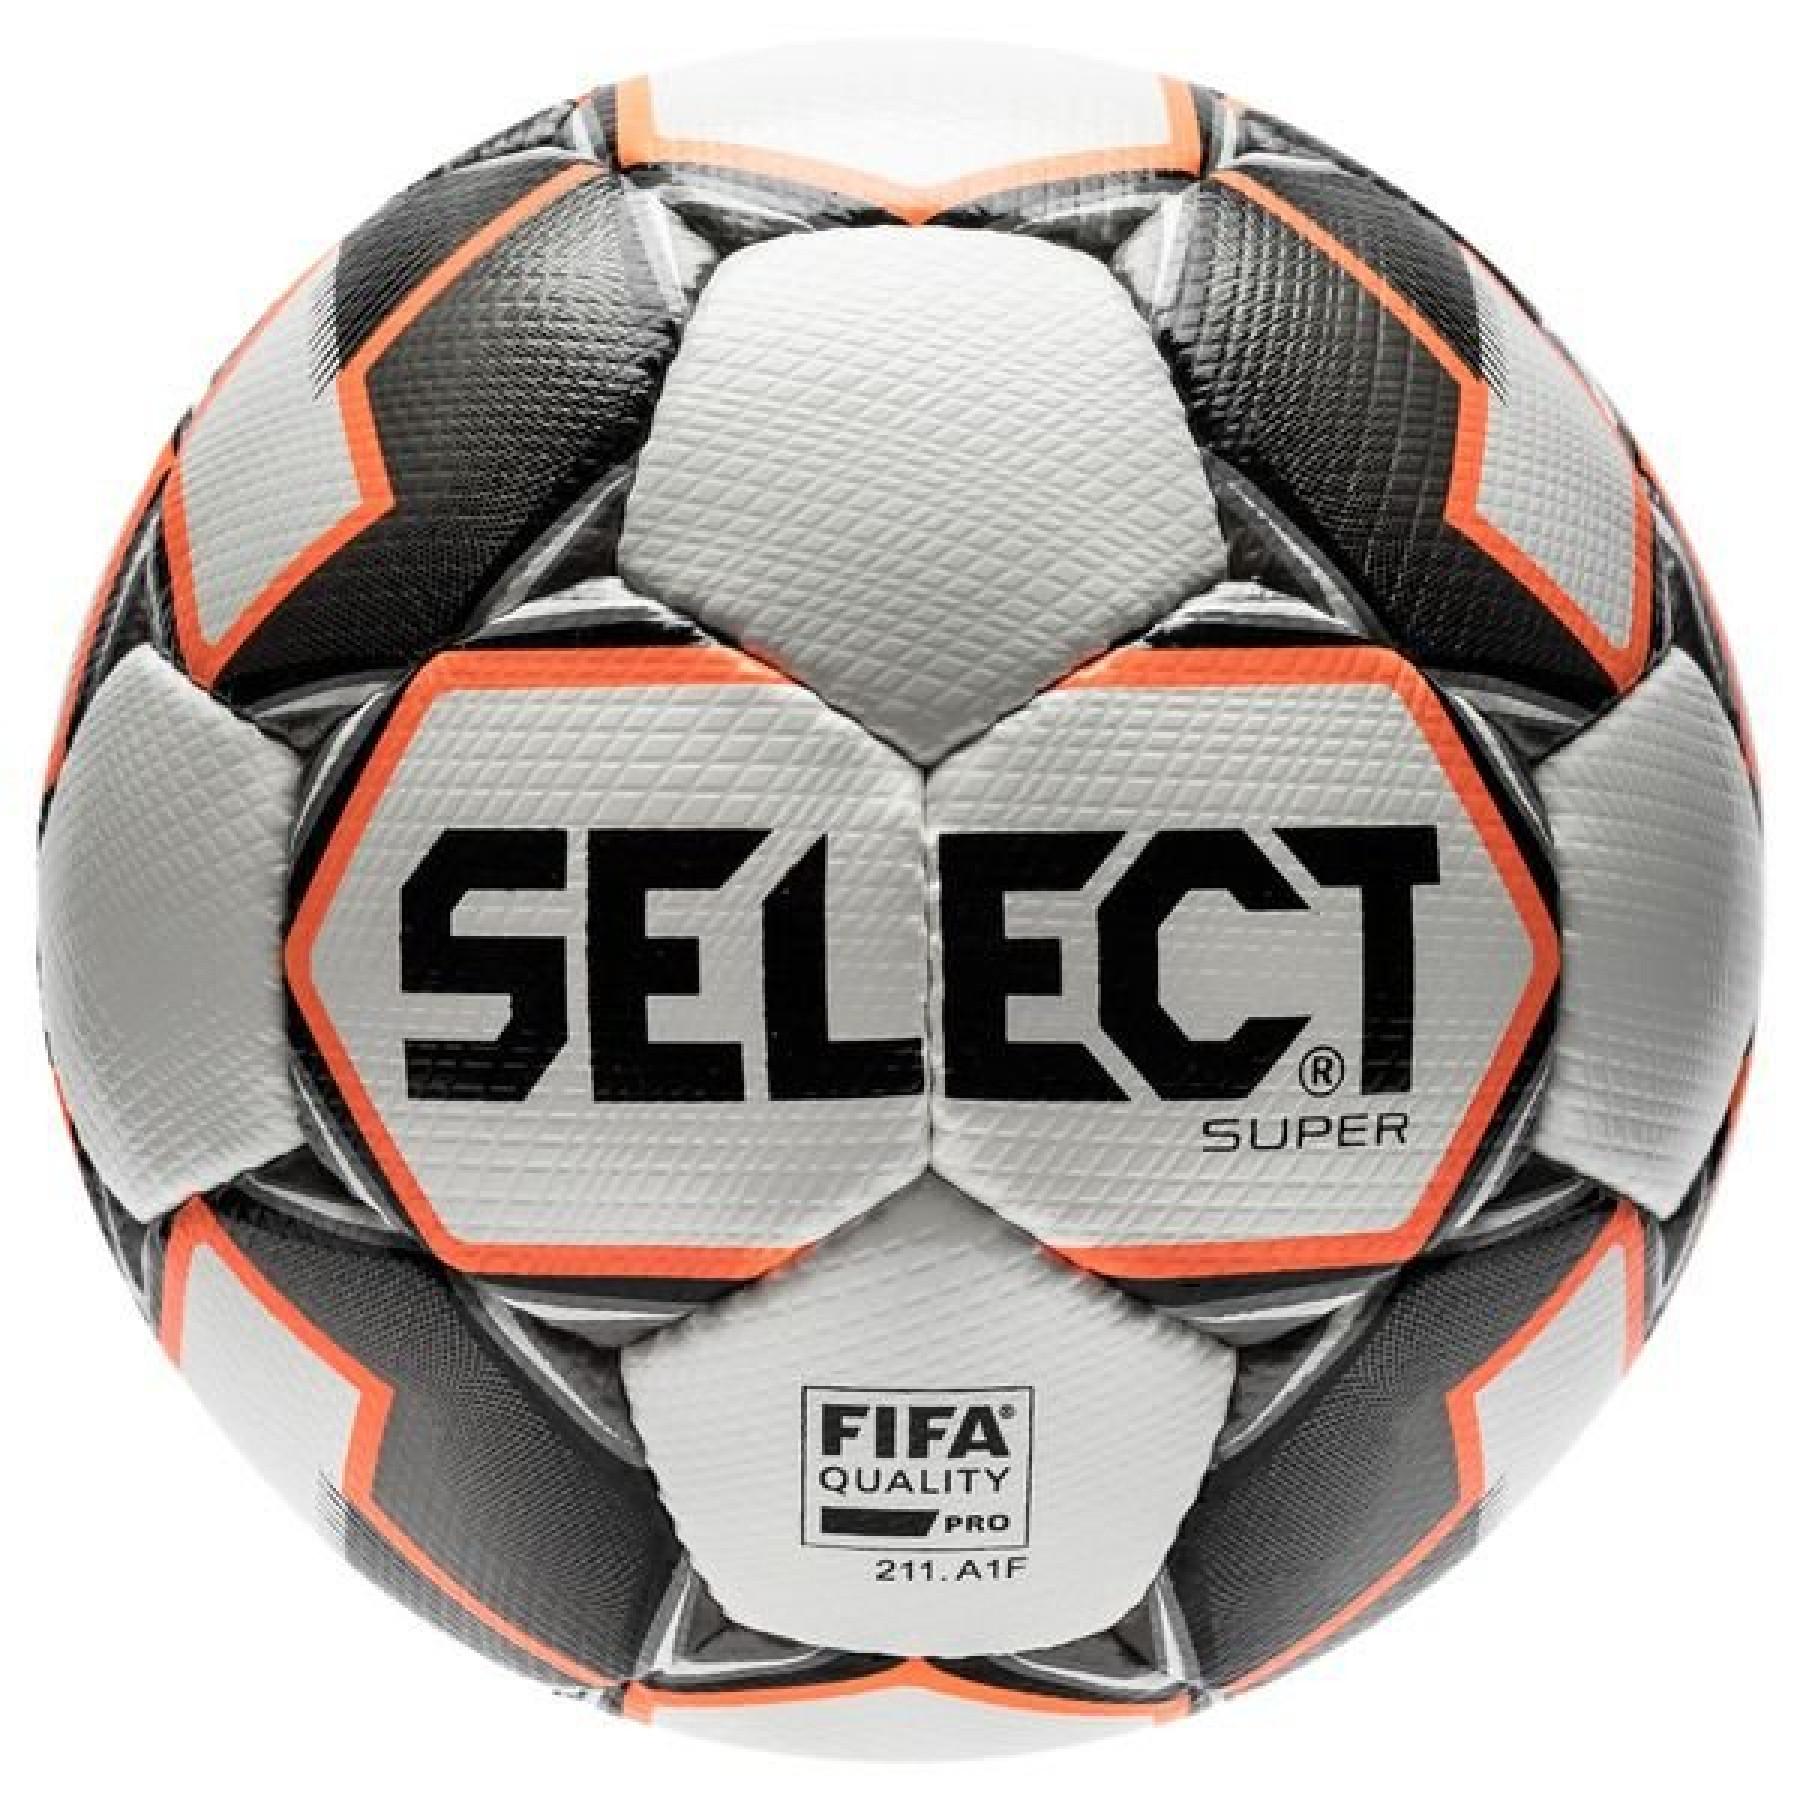 Футбольный мяч select. Мяч select Brilliant Replica. Селект мяч футзальный мастер.